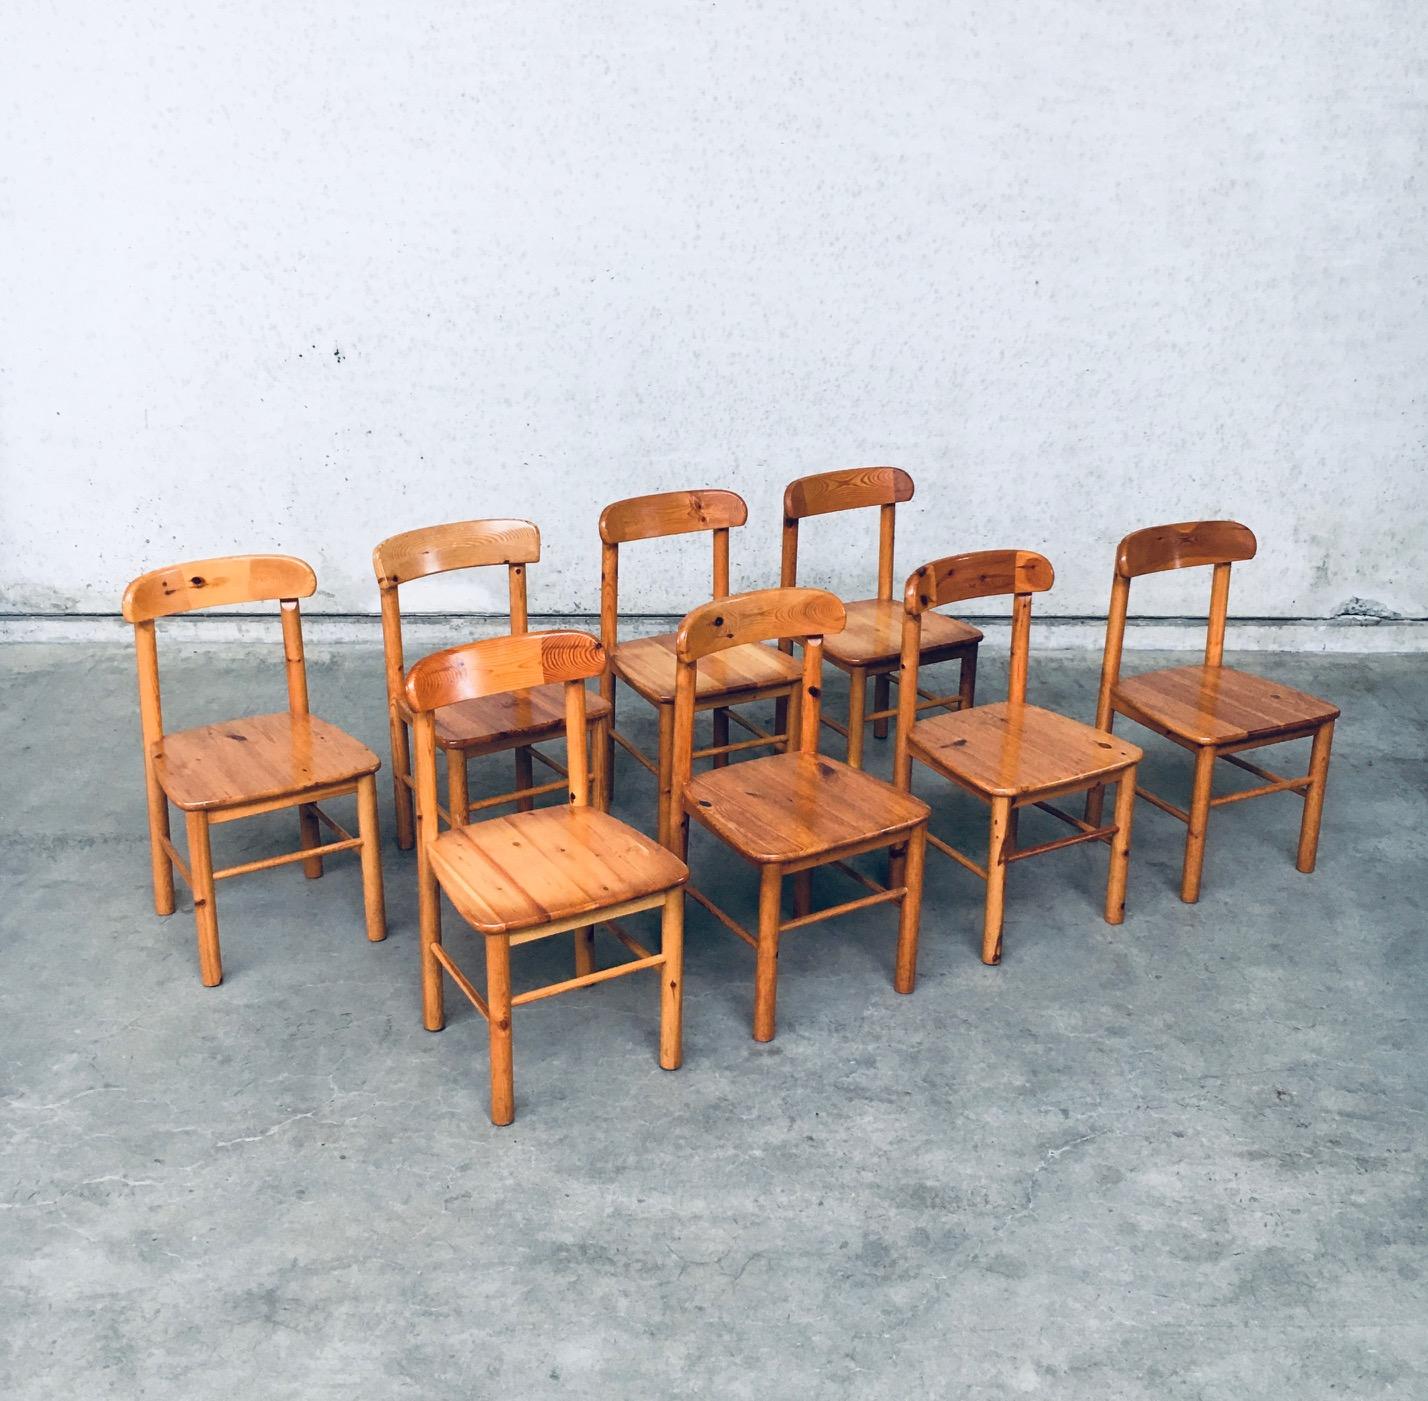 Vintage Skandinavisches Design Satz von 8 Esszimmerstühlen von Rainer Daumiller für Hirtshals Savvaerk. Hergestellt in Schweden, 1970er Jahre. Massive Kiefer konstruiert Esszimmerstuhl Set mit schönen gebogenen Rückenlehne. Diese Stühle sind alle in